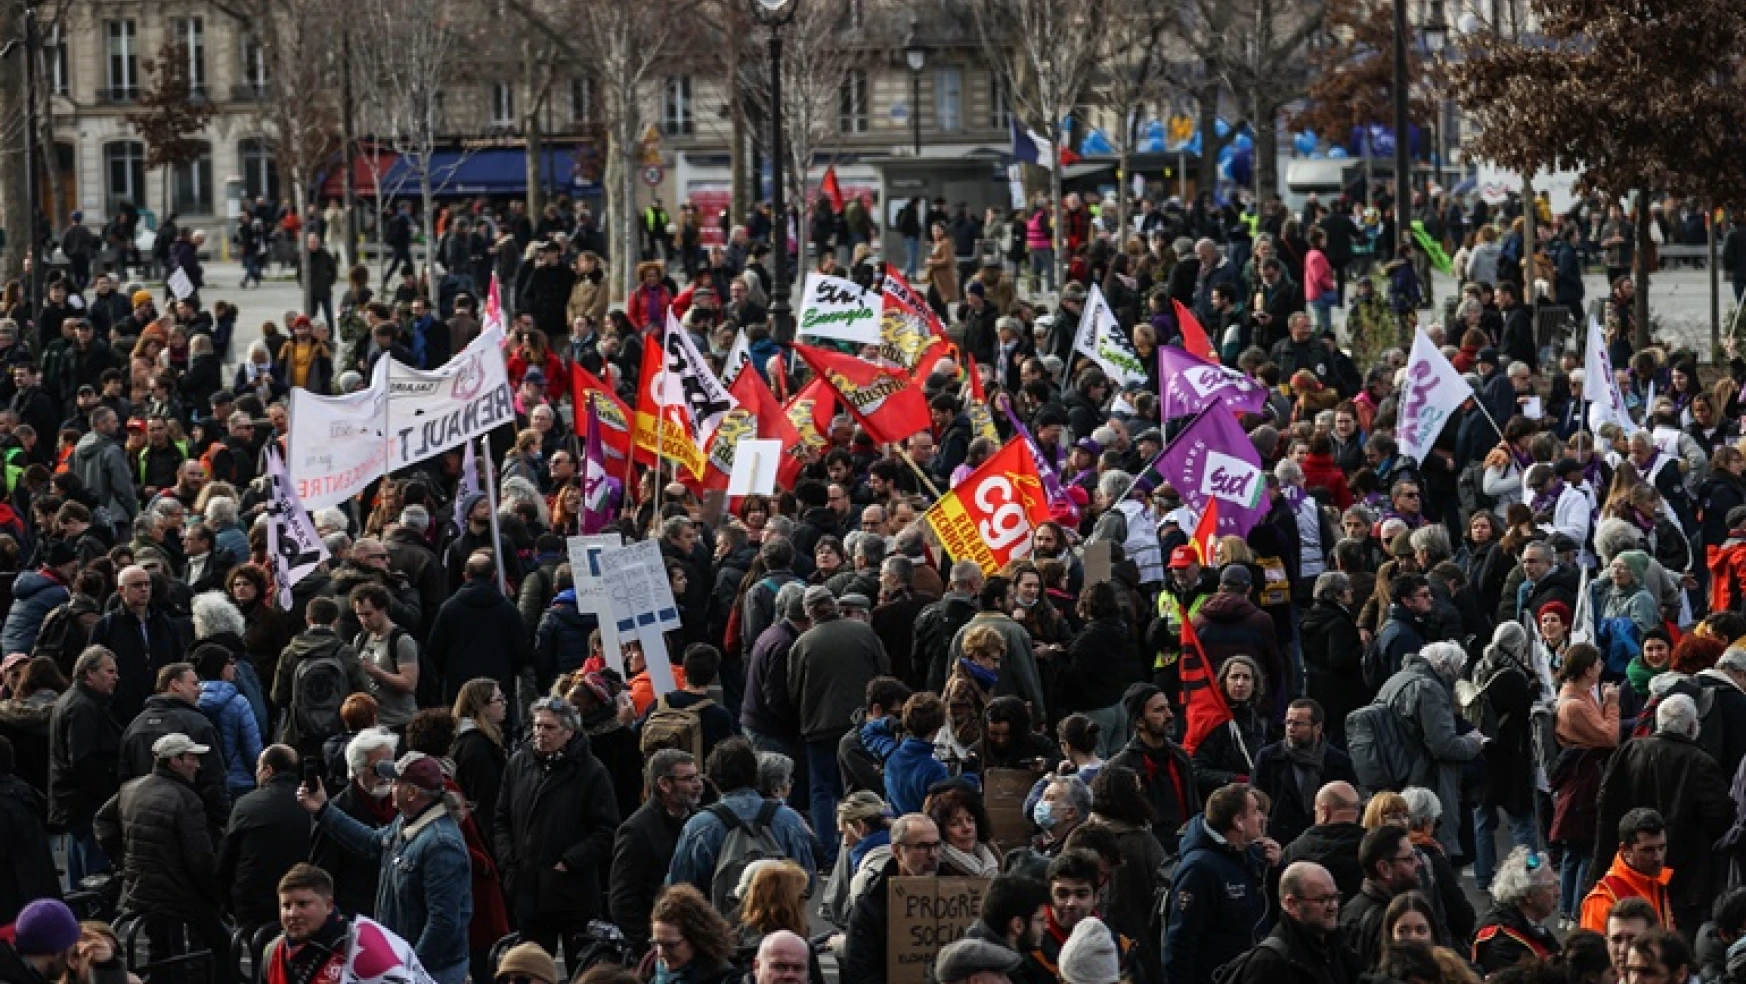 Fransa'da sendikalardan emeklilik reformuna karşı grev çağrısı